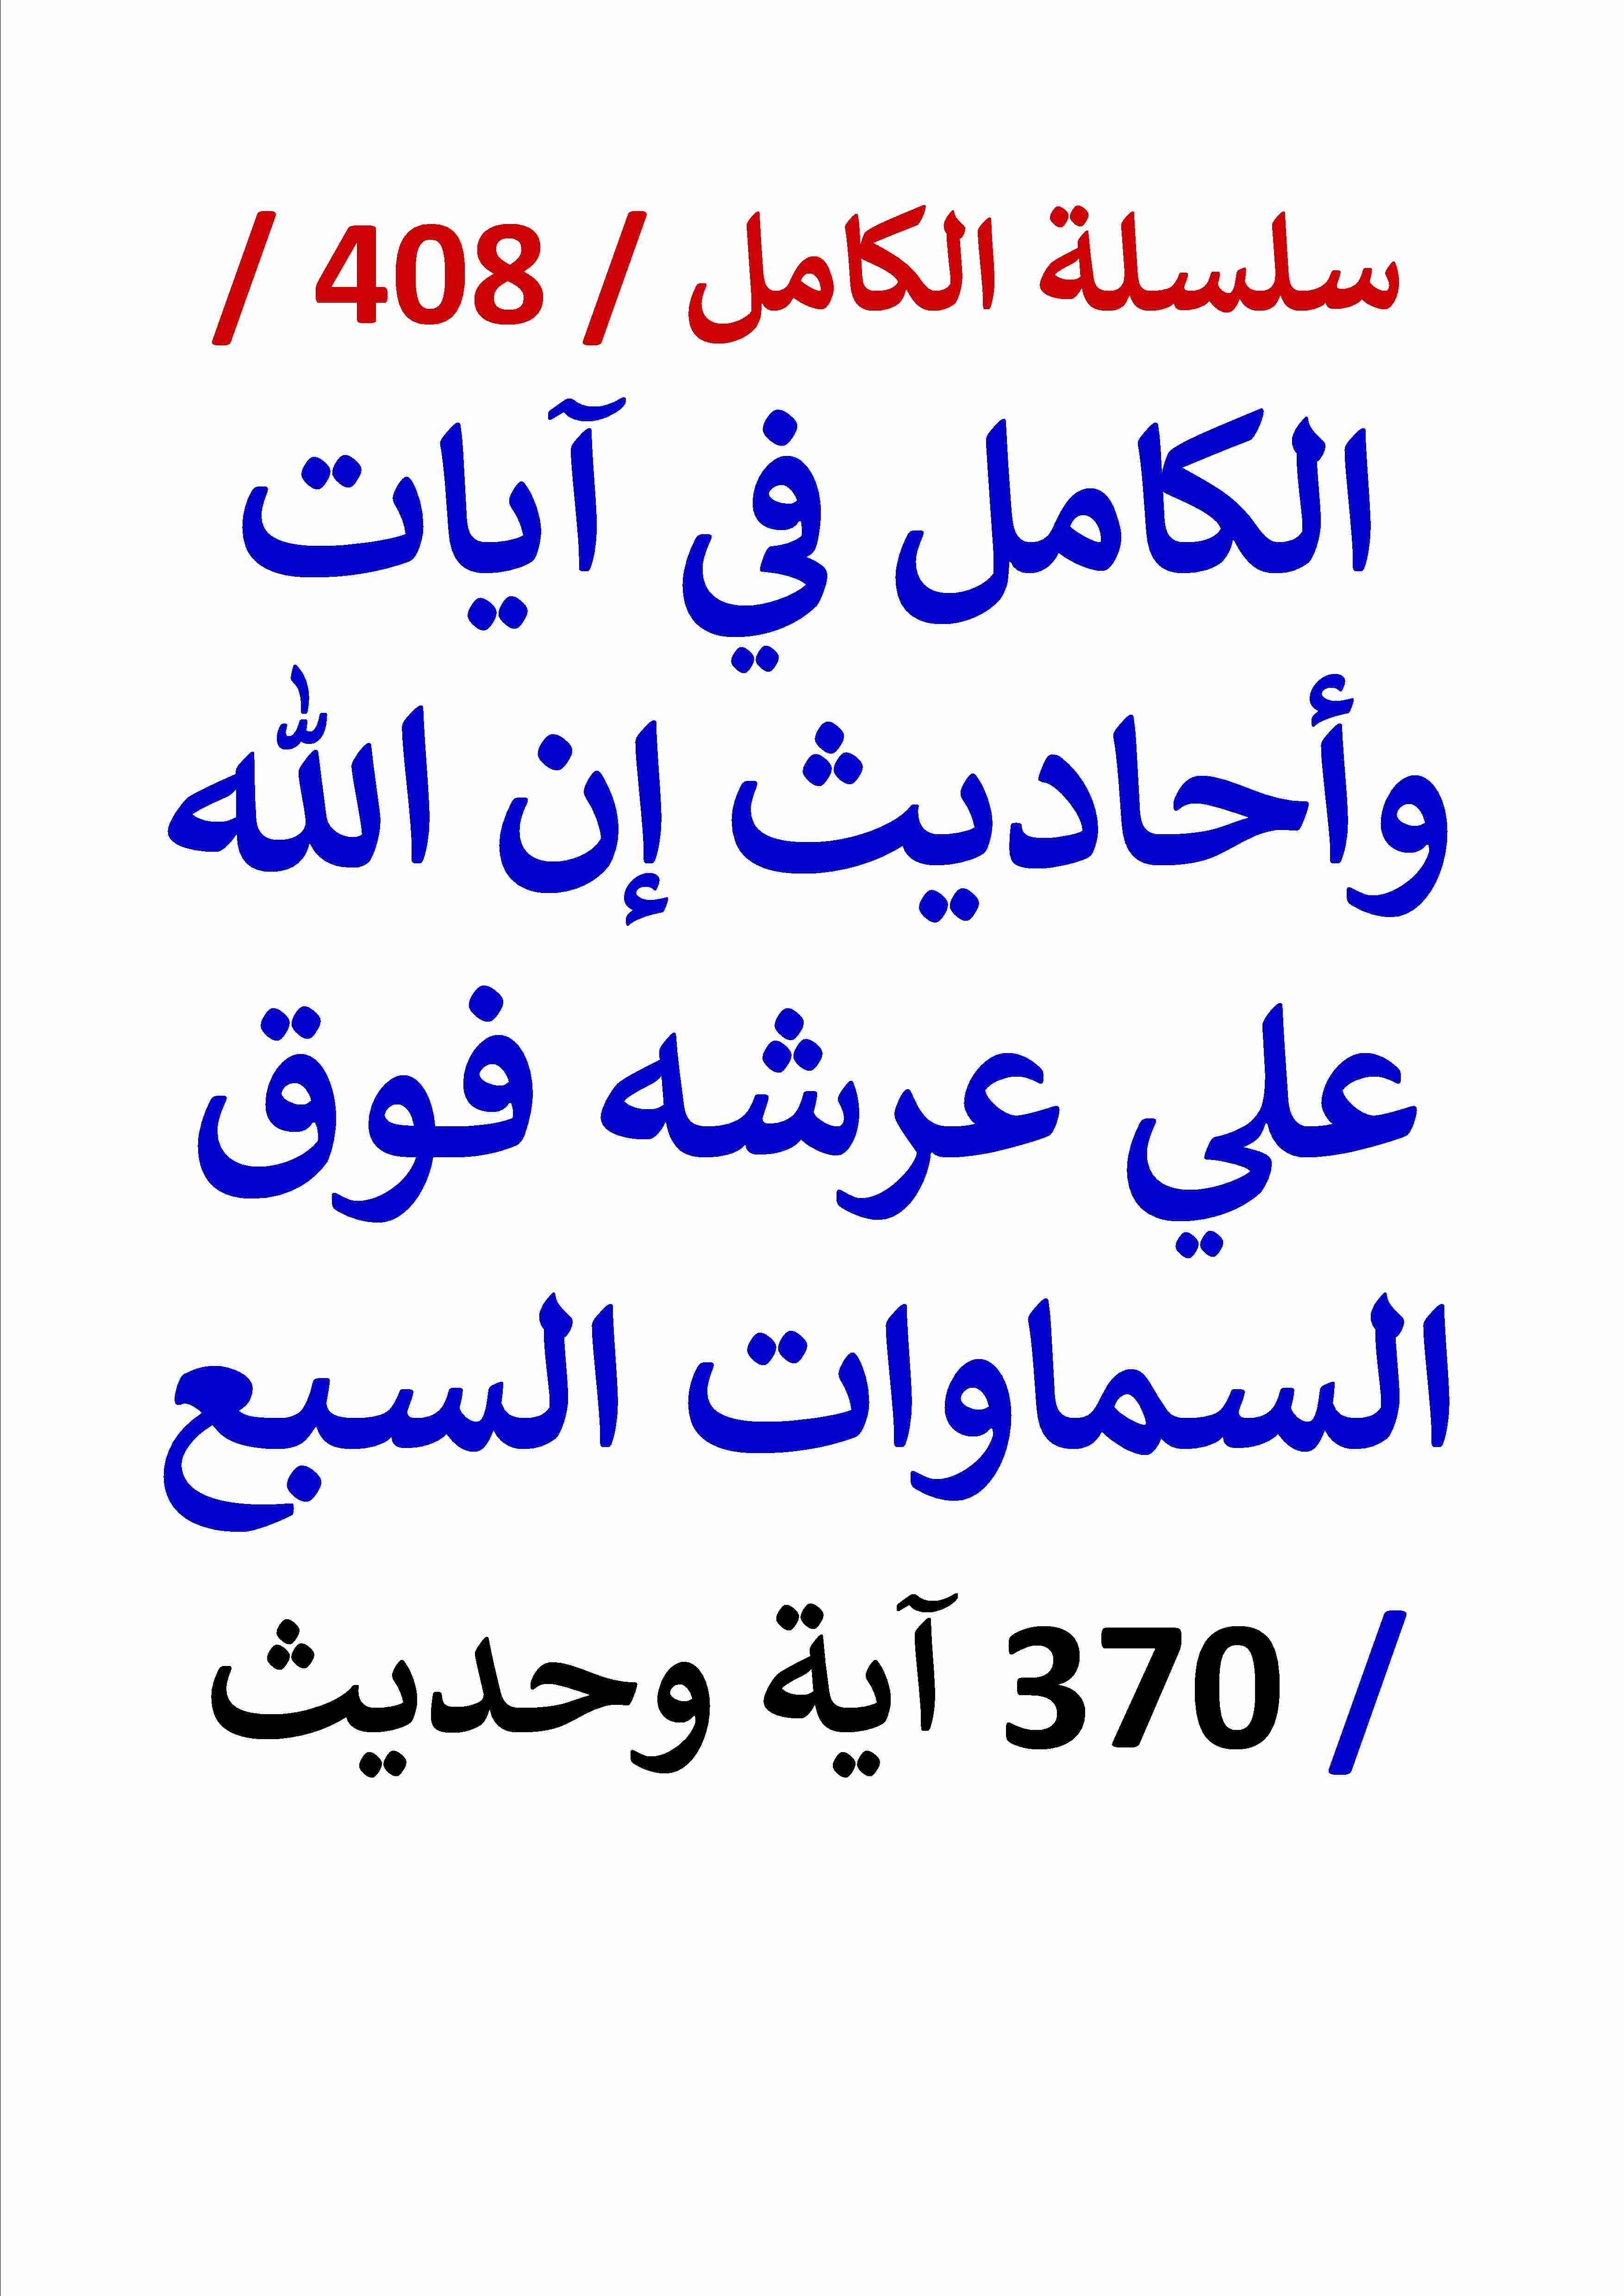 كتاب الكامل في ايات واحاديث ان الله علي عرشه فوق السماوات السبع 370 اية وحديث لـ عامر الحسيني